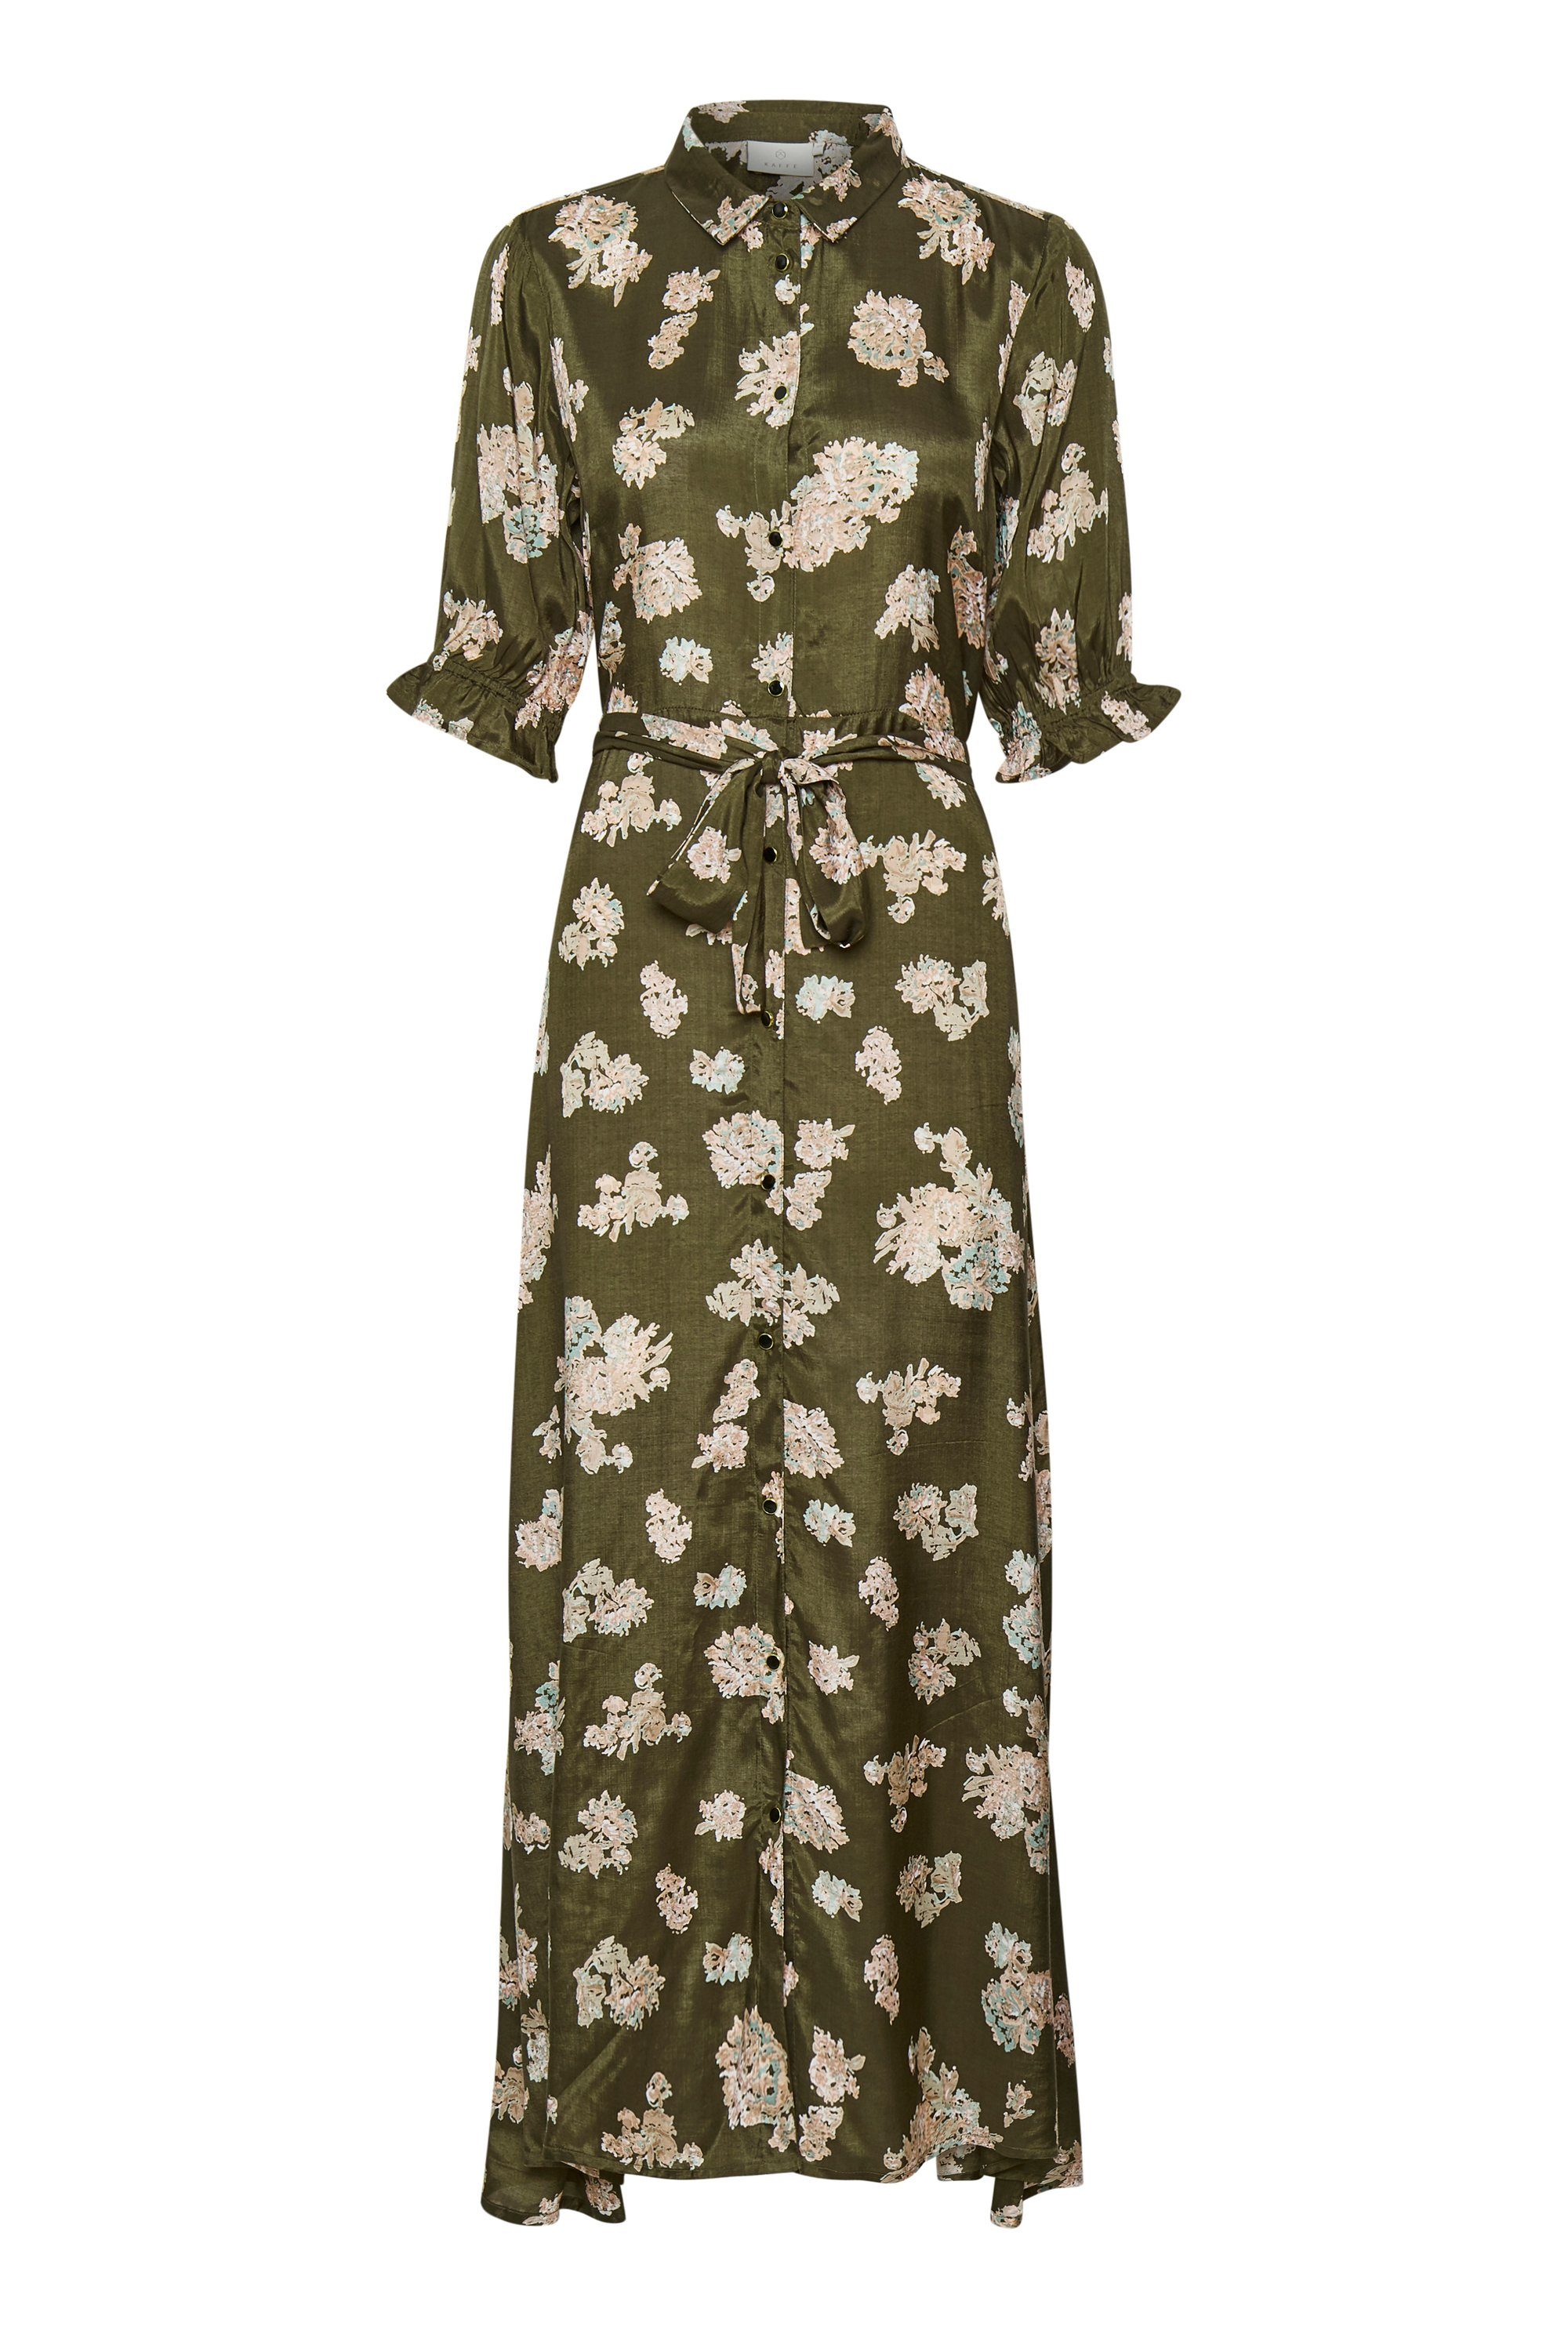 KAFFE Jerseykleid Kleid KAvelana Grape Leaf